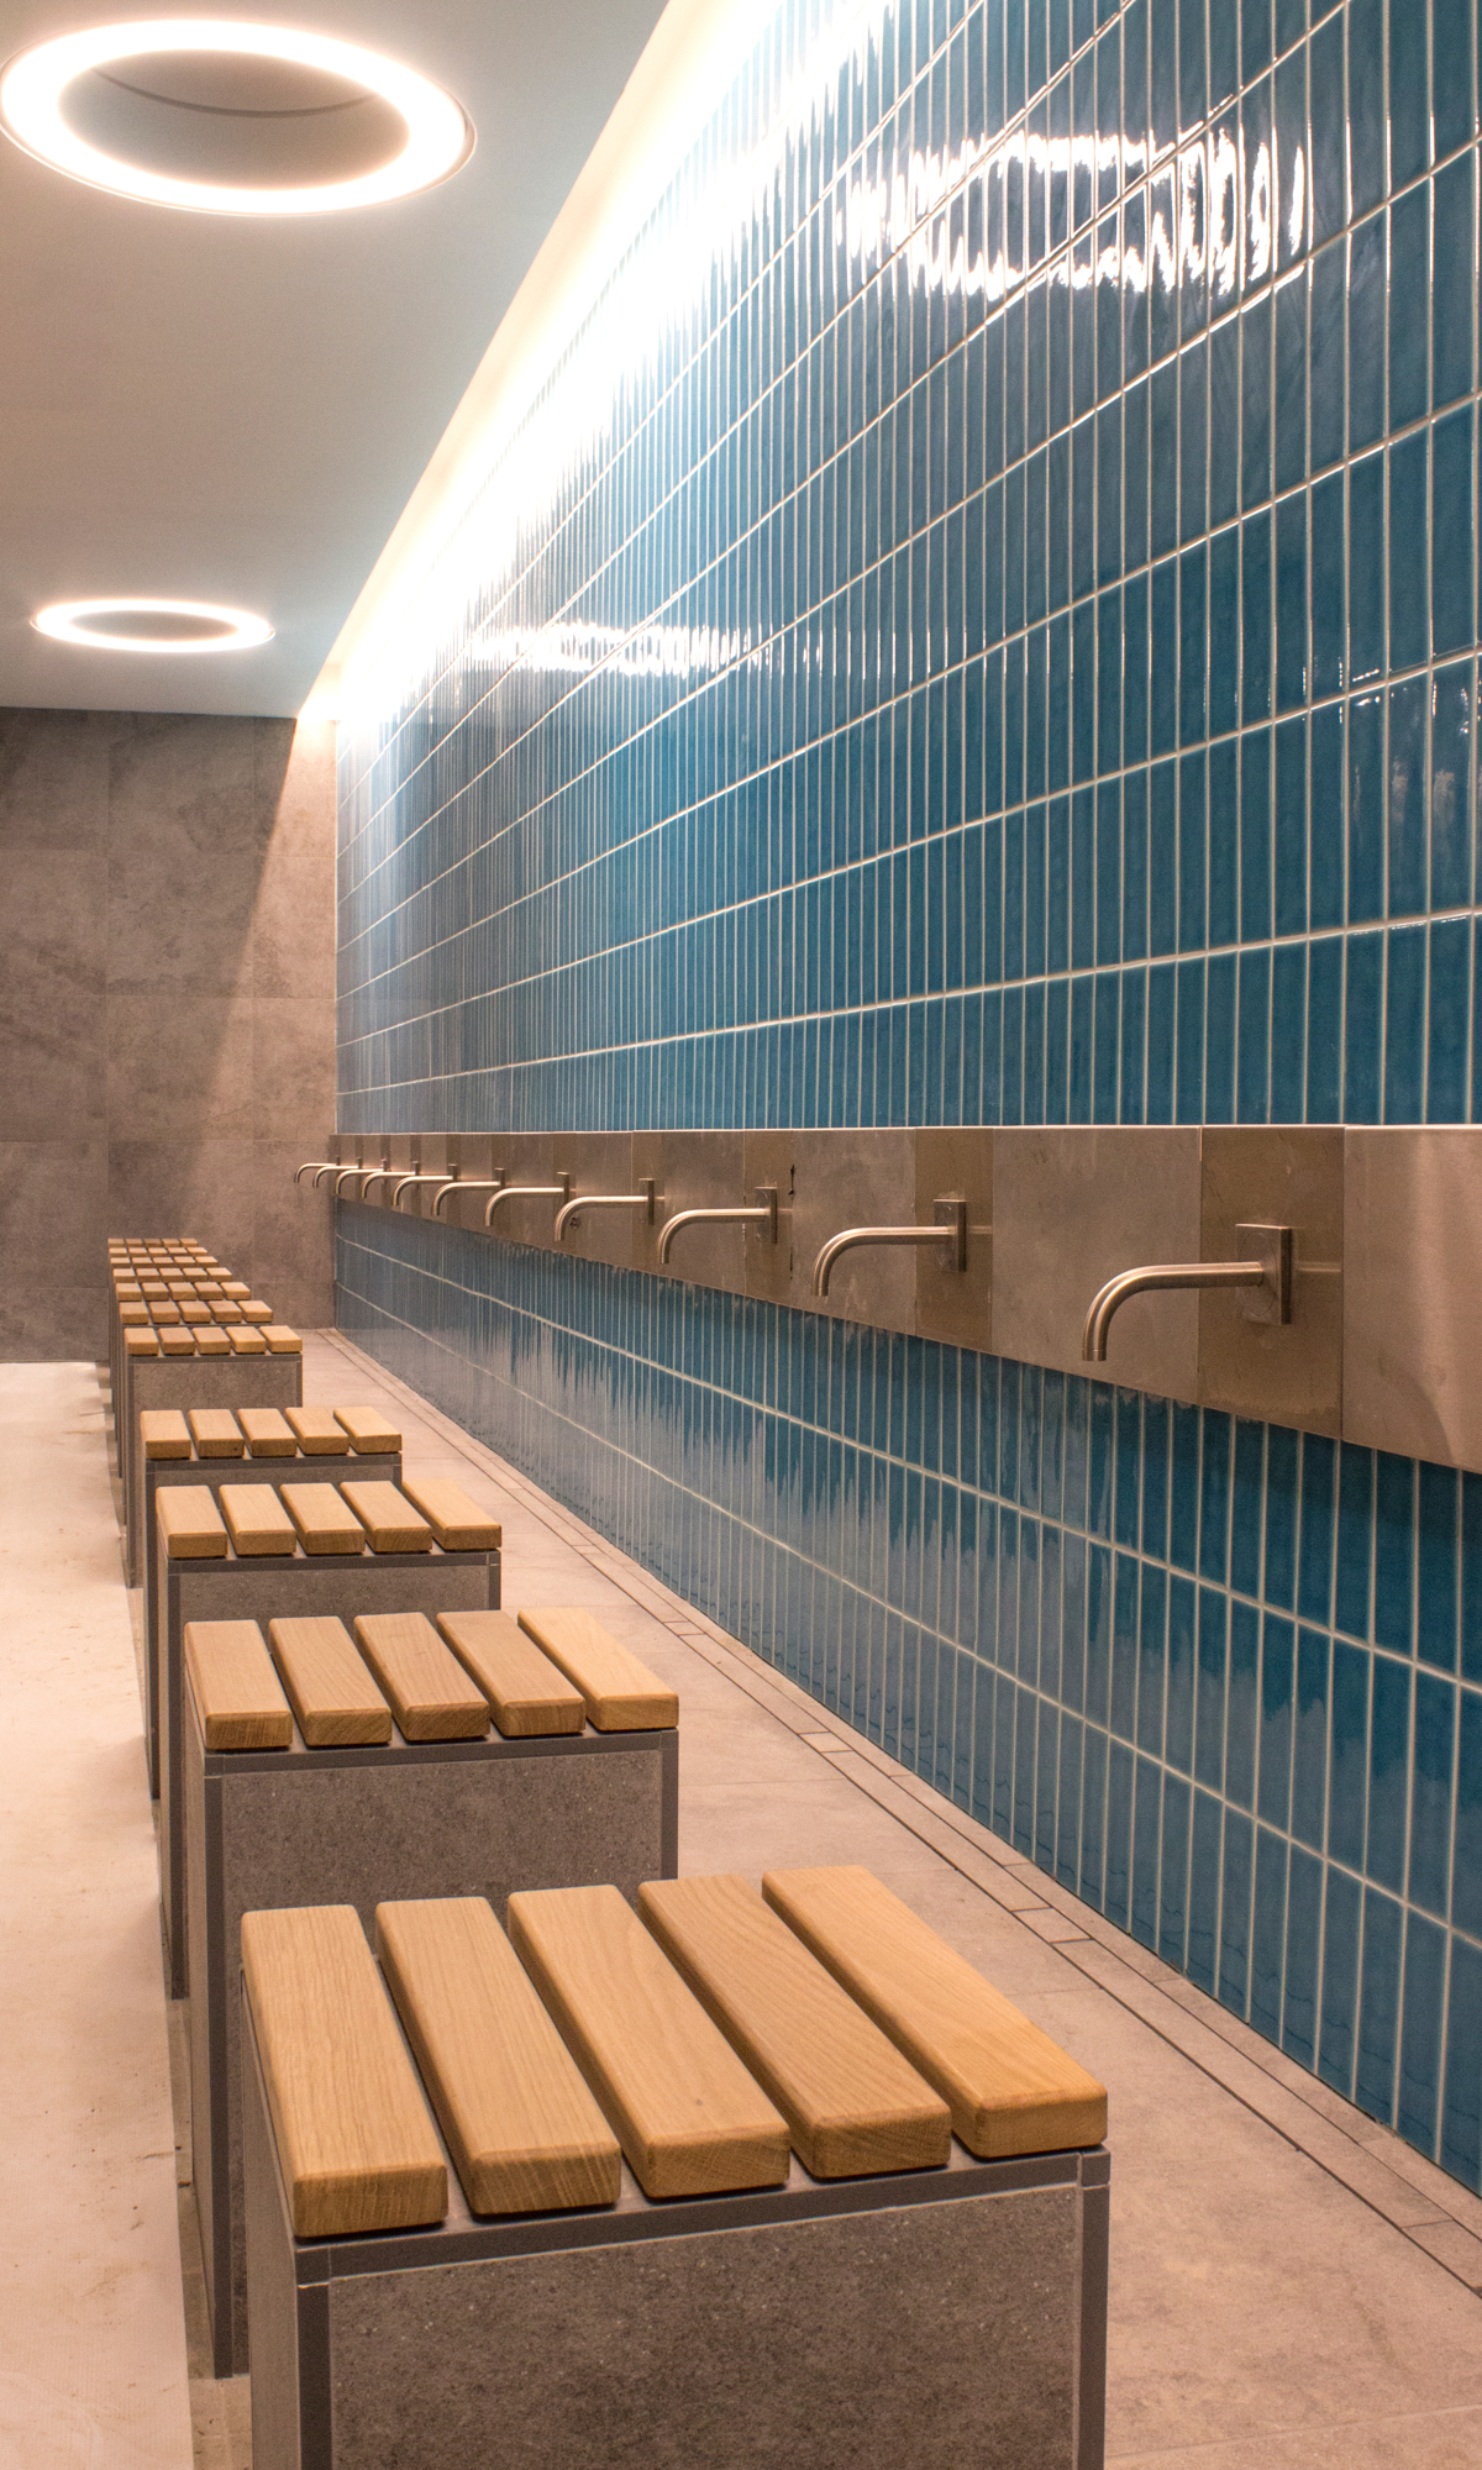 La prise de vue montre l’espace de lavage de la mosquée de Cambridge. Les tabourets sont en pierre et recouverts de planches de bois. Les robinets sont fixés sur un mur en carrelage bleu.